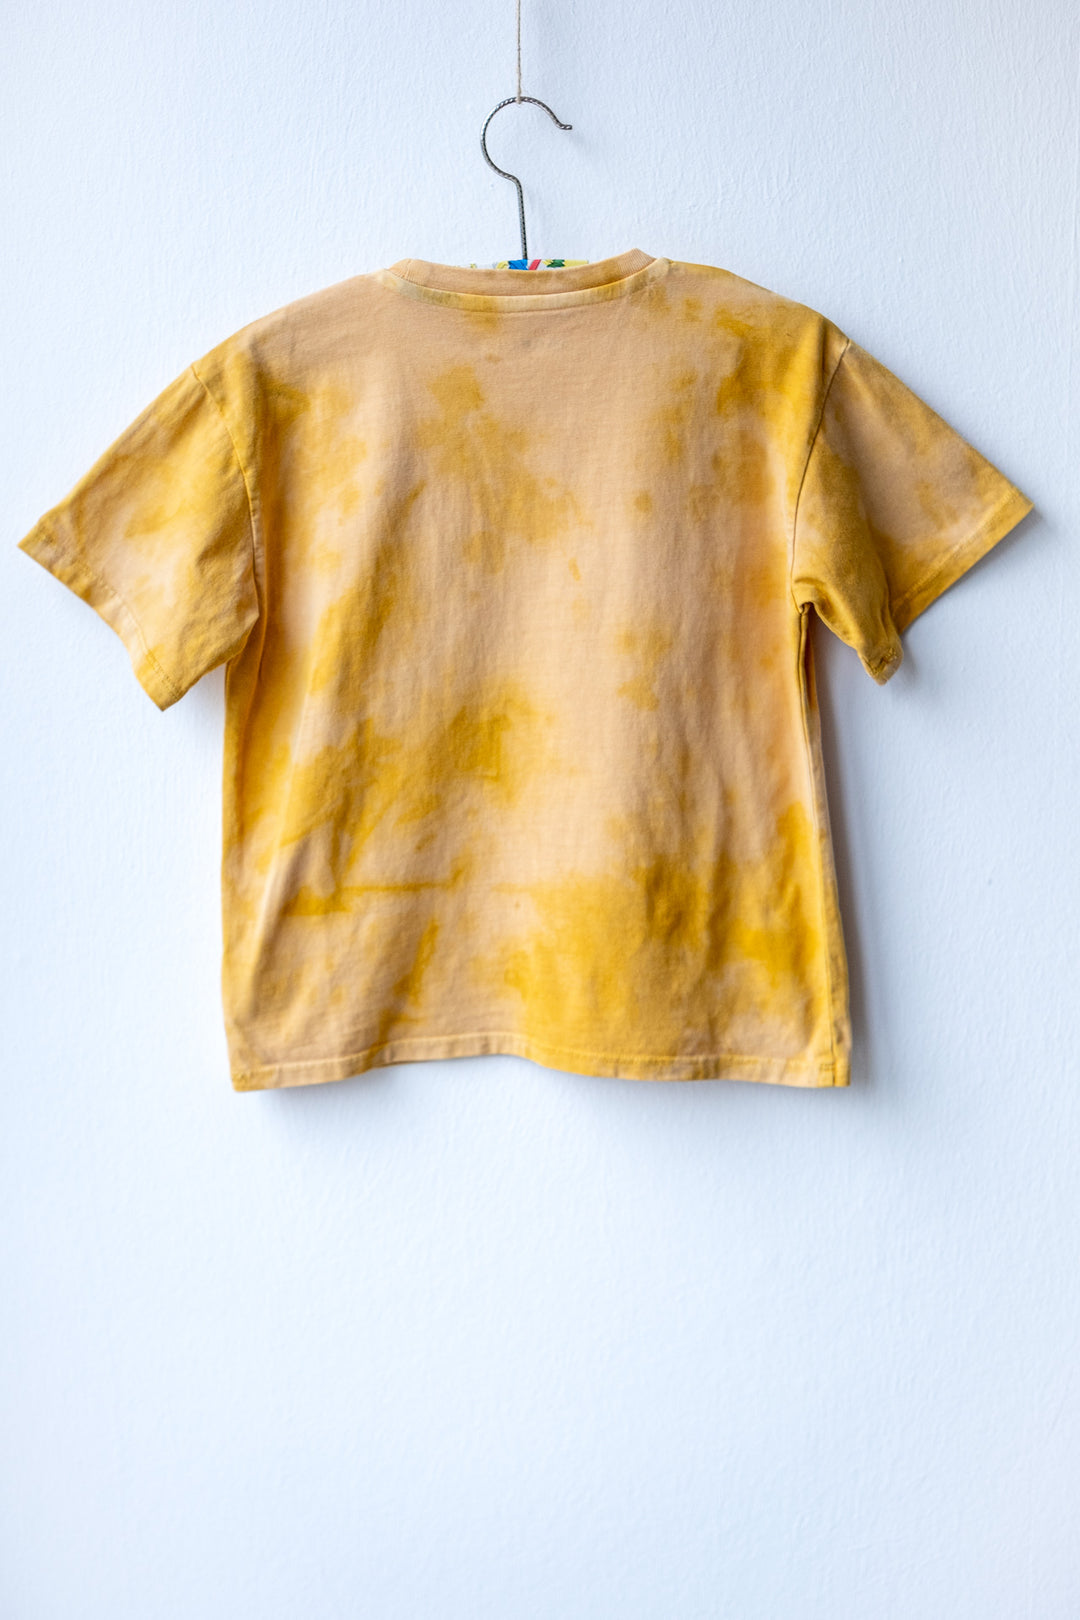 T-Shirt #013 Kids - Yellow/Peach